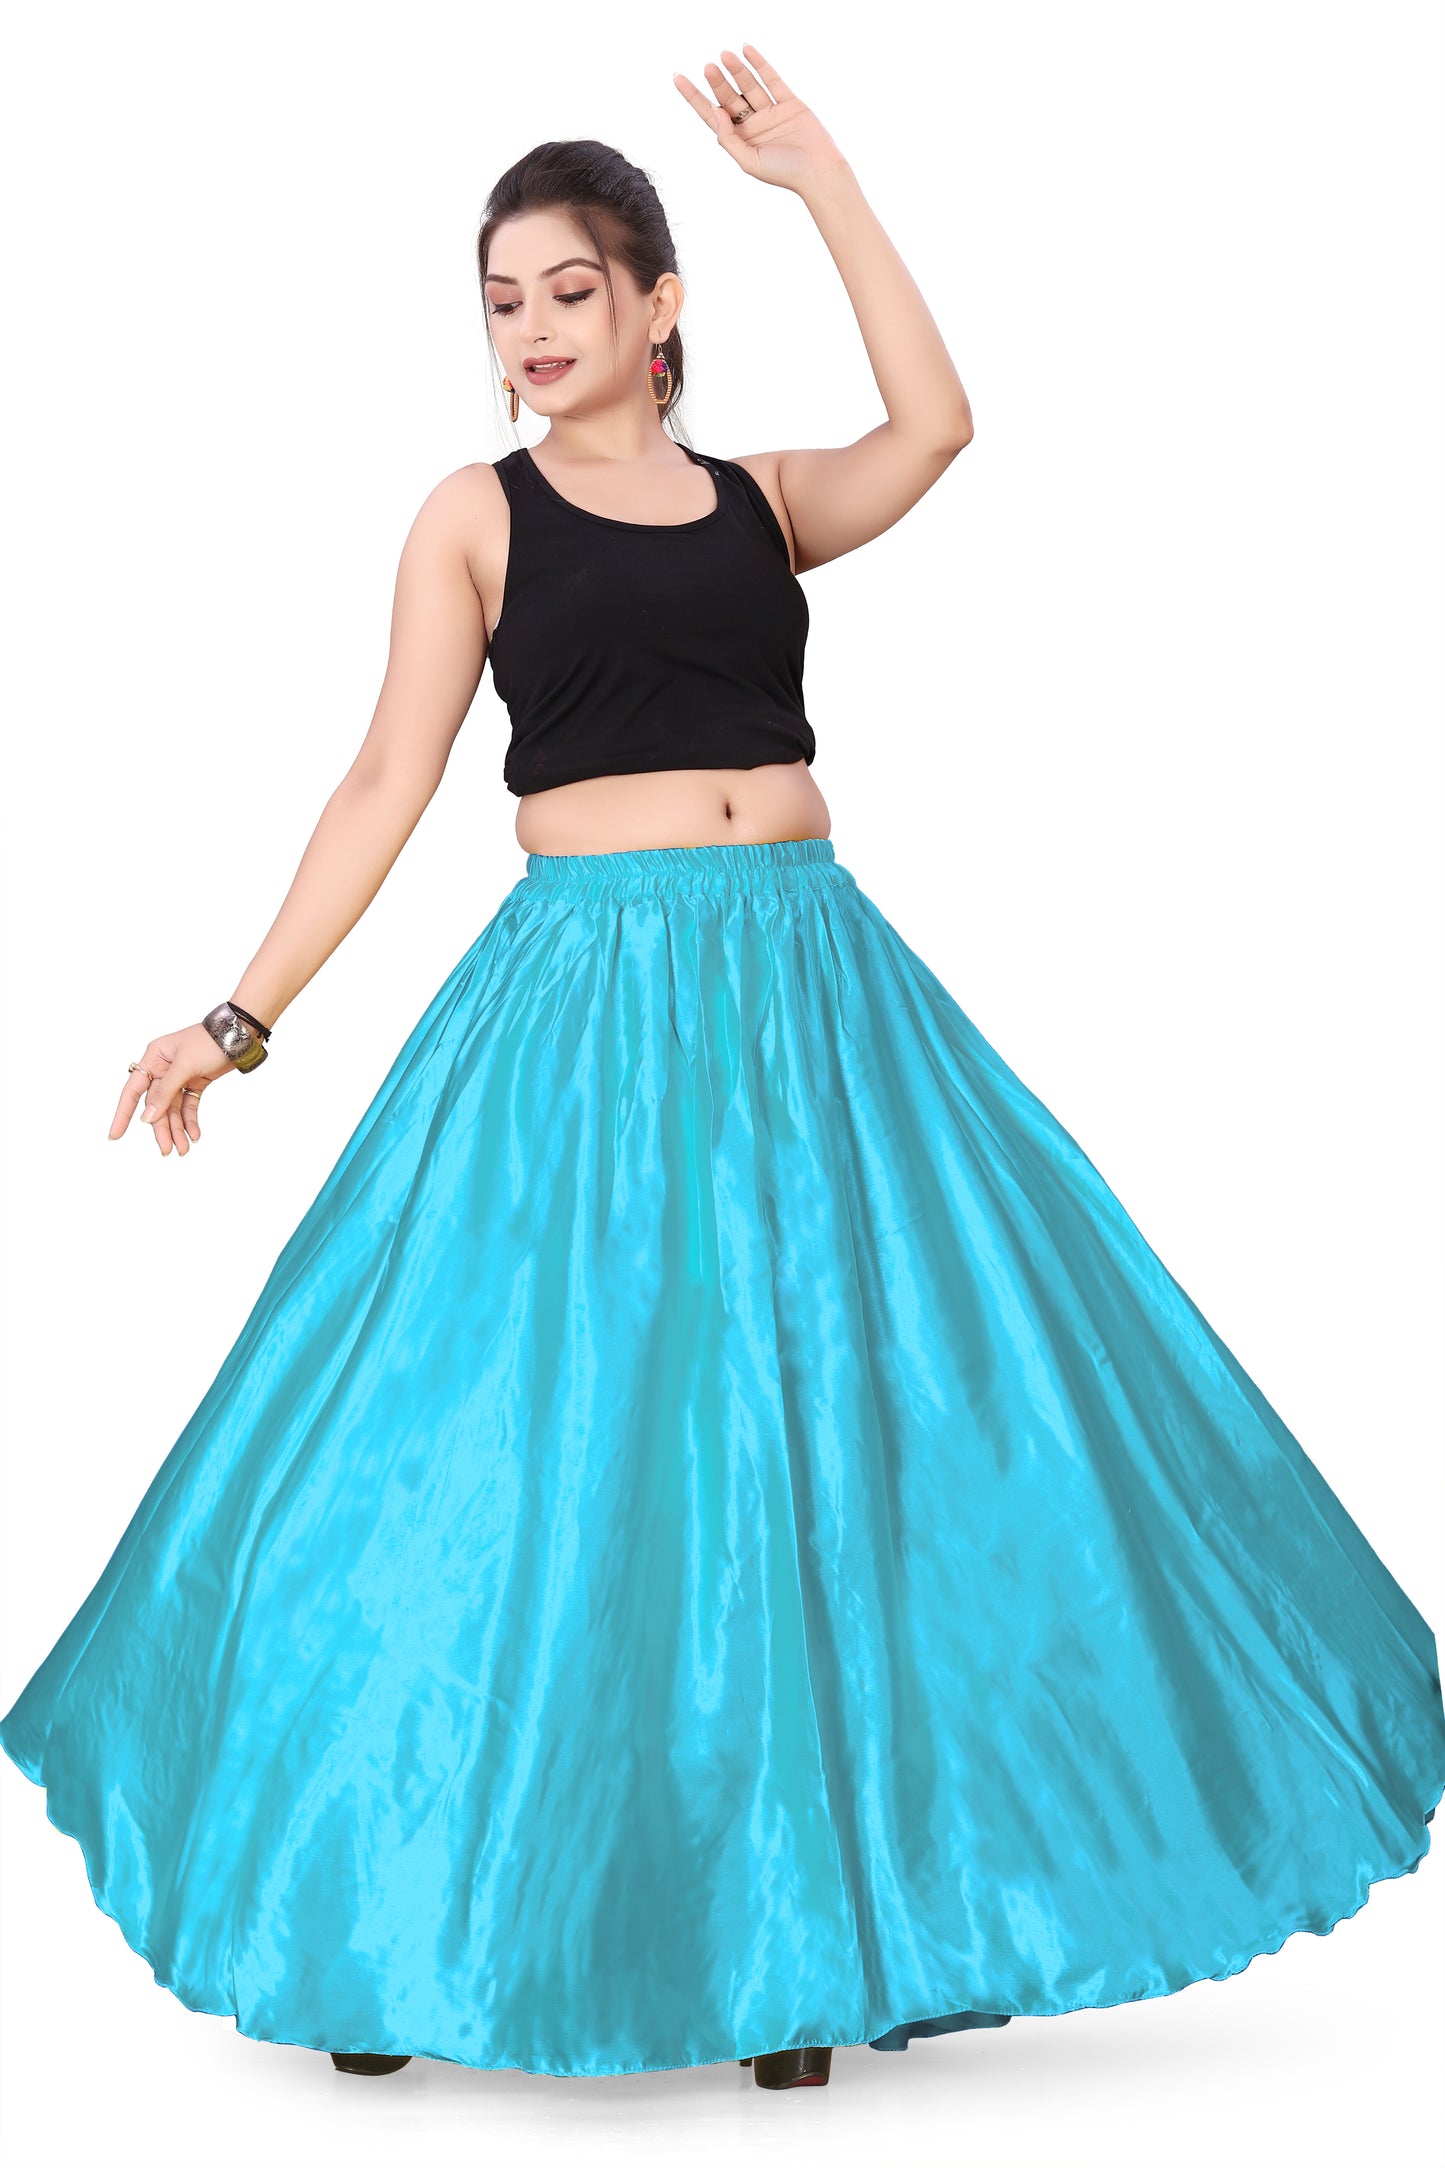 Satin Belly Dance Full Circle Skirt S8-Regular Size 3